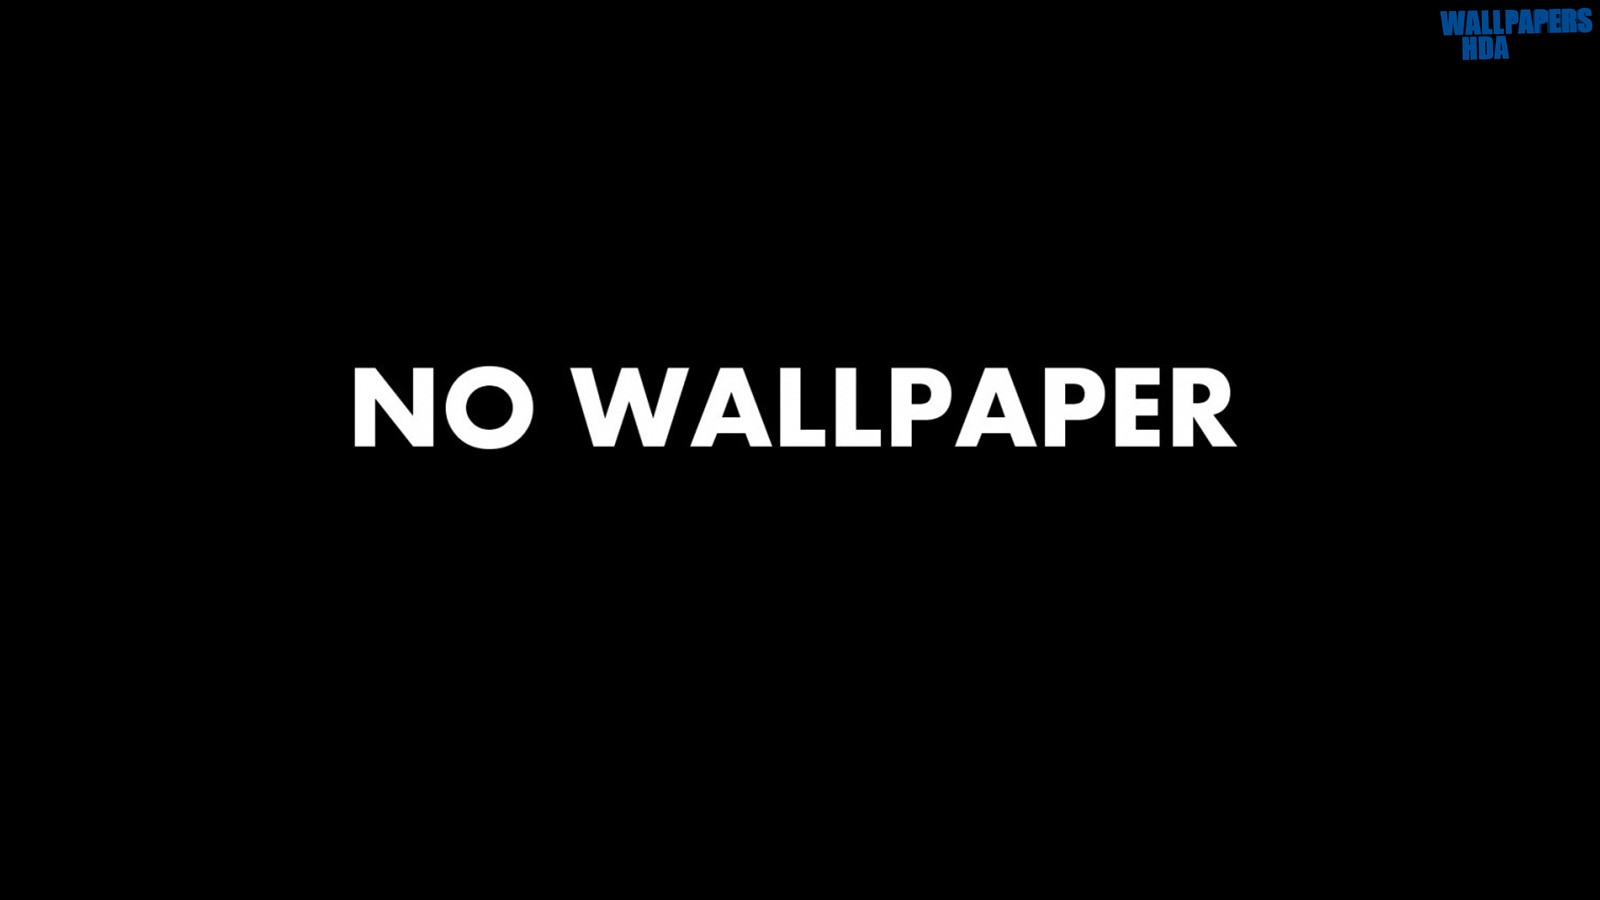 No wallpaper wallpaper 1600x900